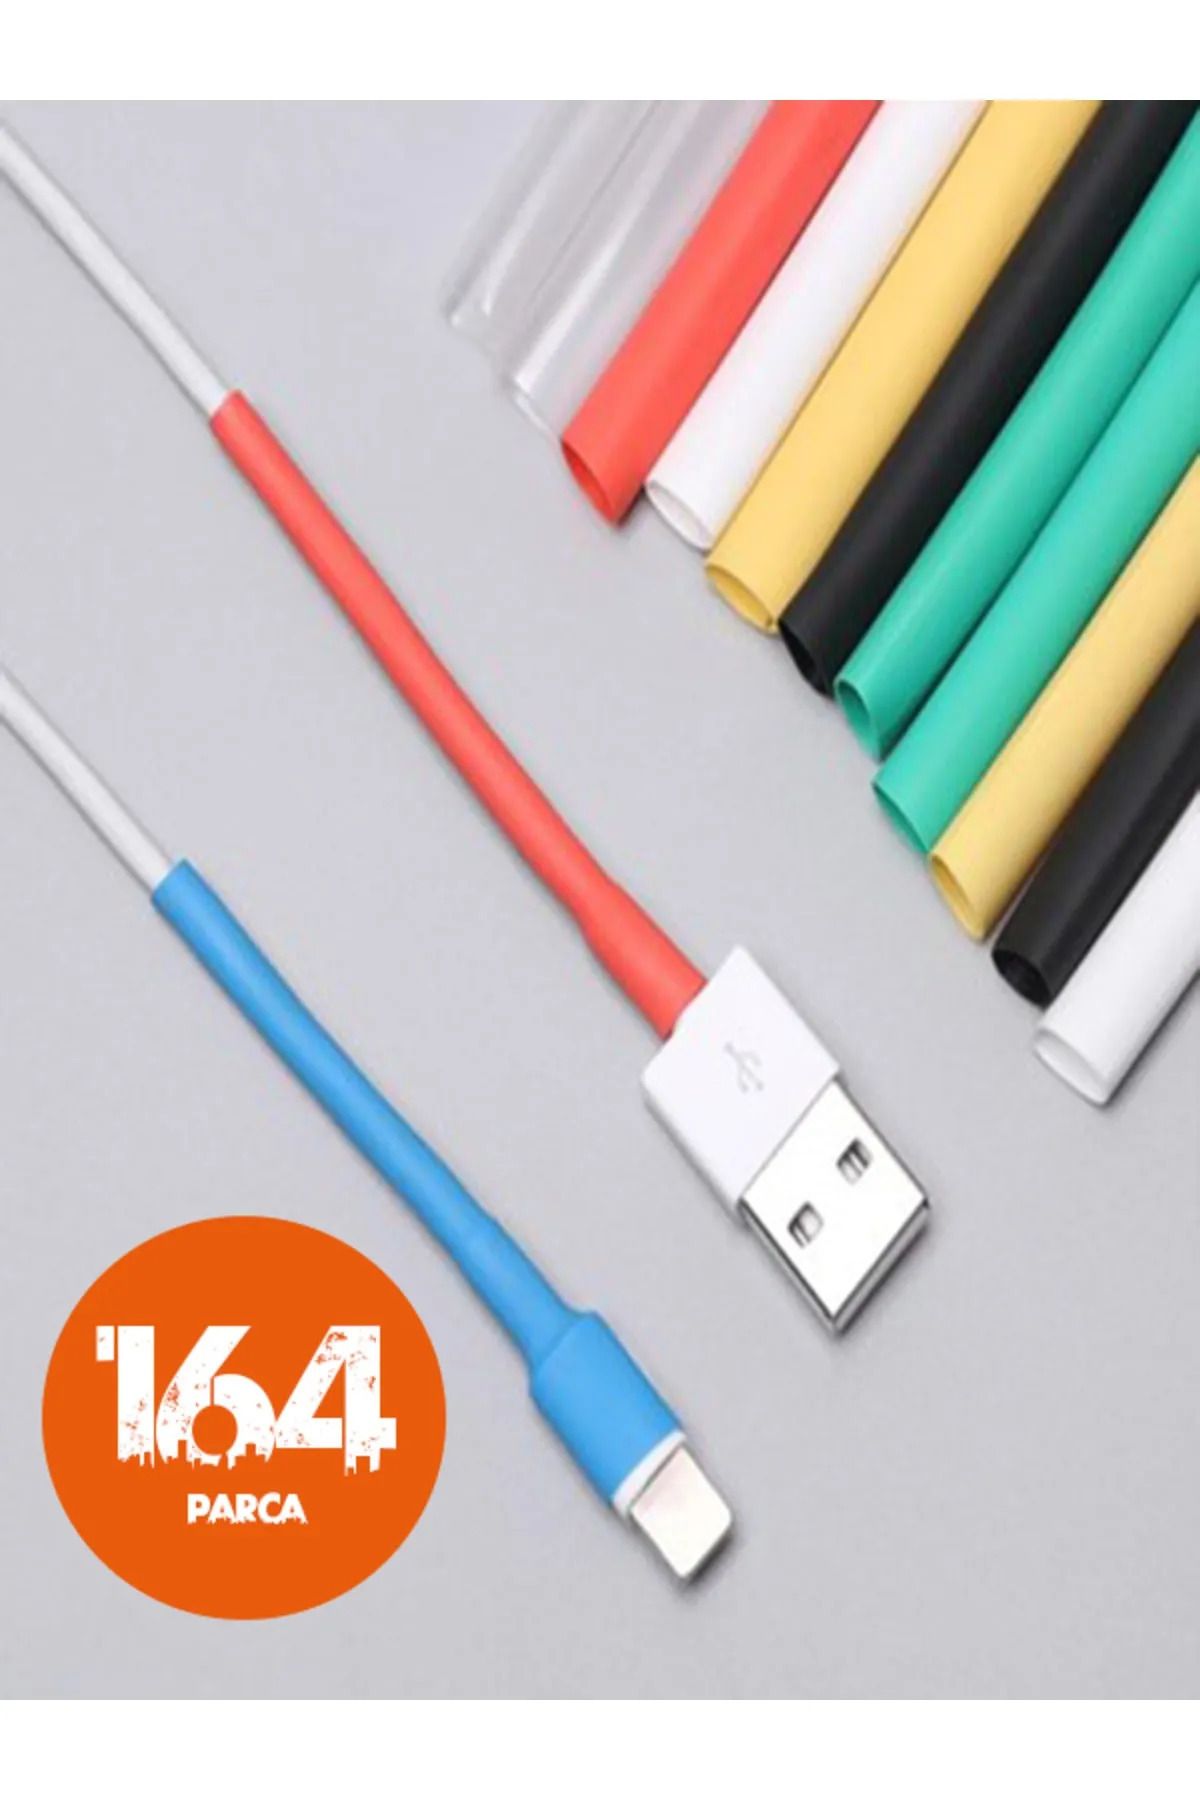 omilife Kablo Tamir Aparatı 164 Parça Kılıf Koruyucu Isıyla Daralan Renkli Makaron